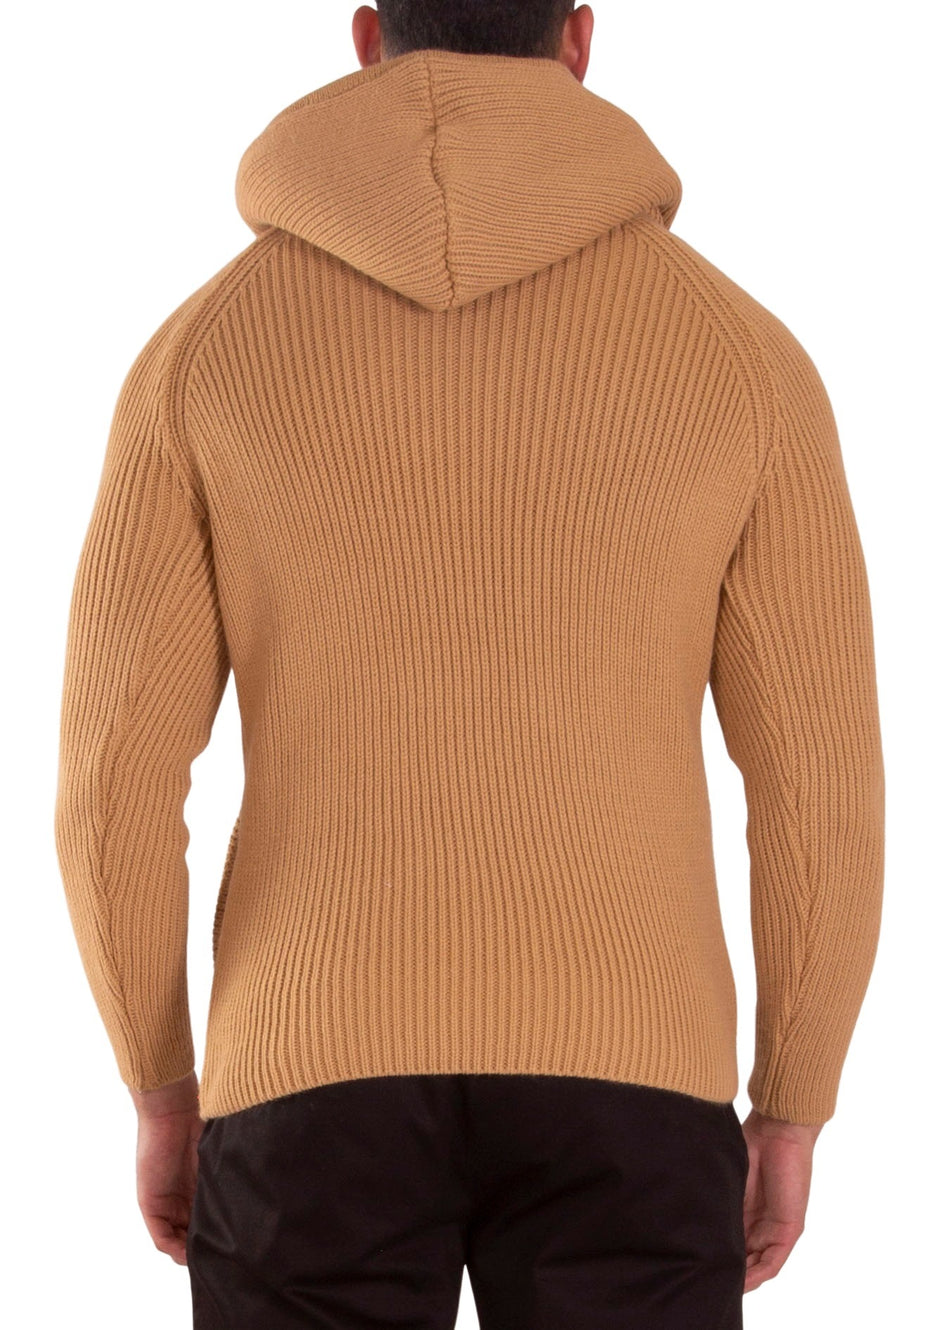 235101 - Beige Zip-Up Sweater